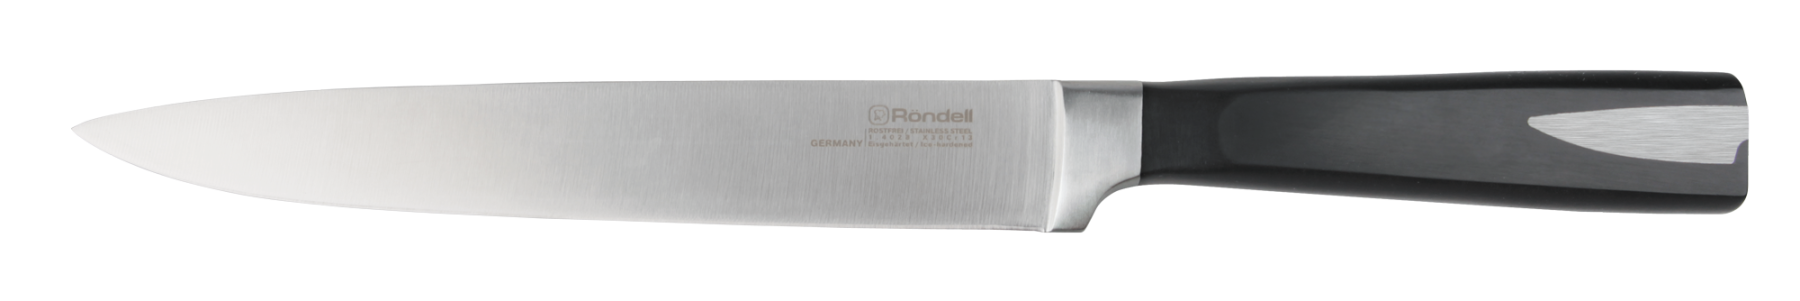 Разделочный нож Rondell Cascara 20 см. RD-686